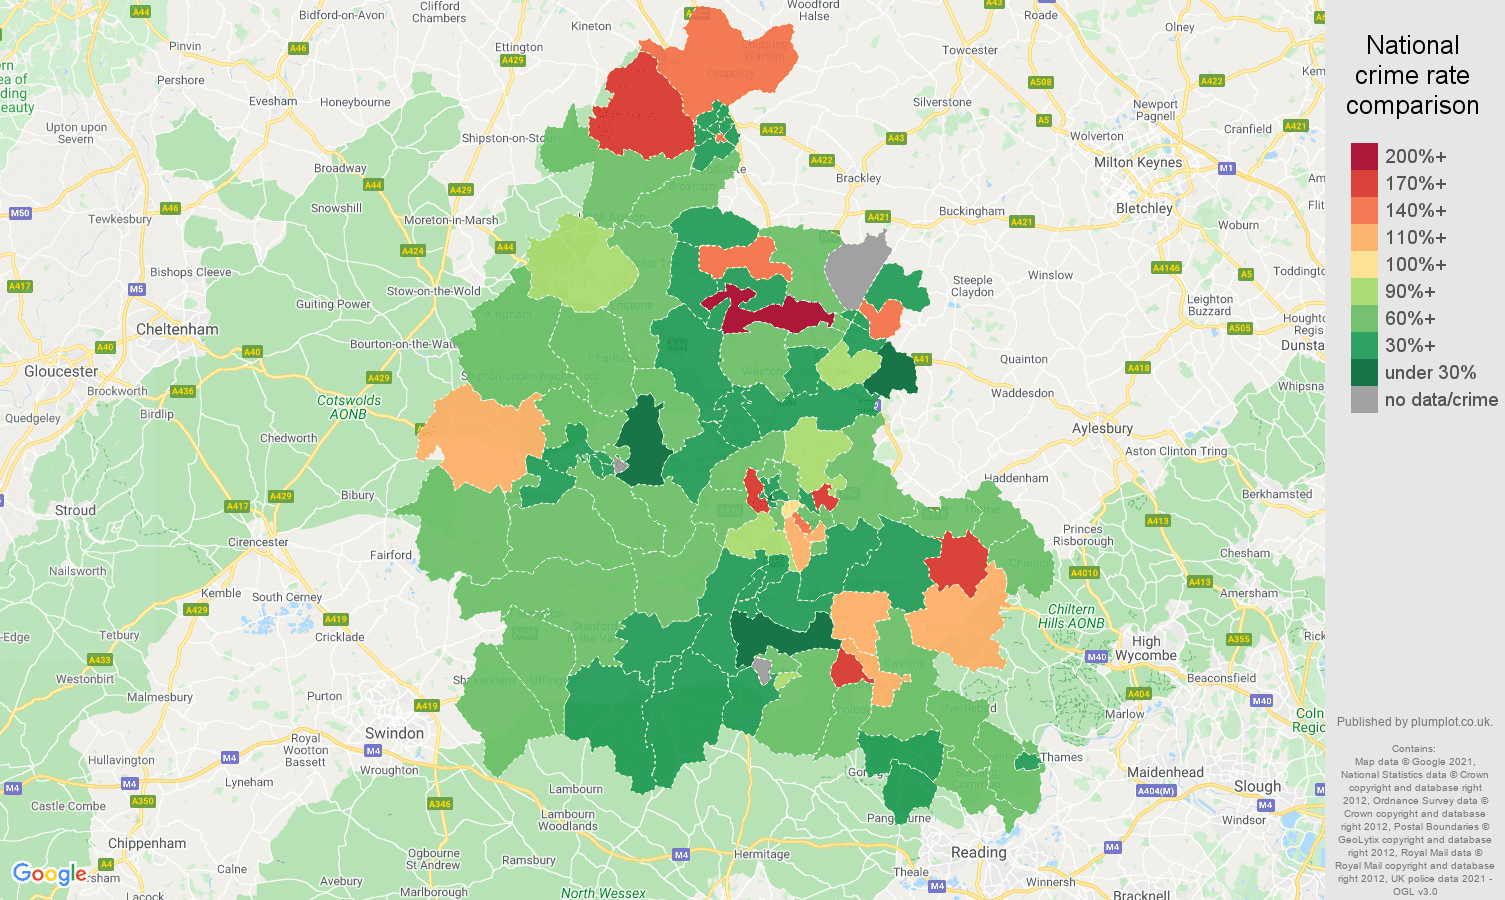 Oxfordshire burglary crime rate comparison map